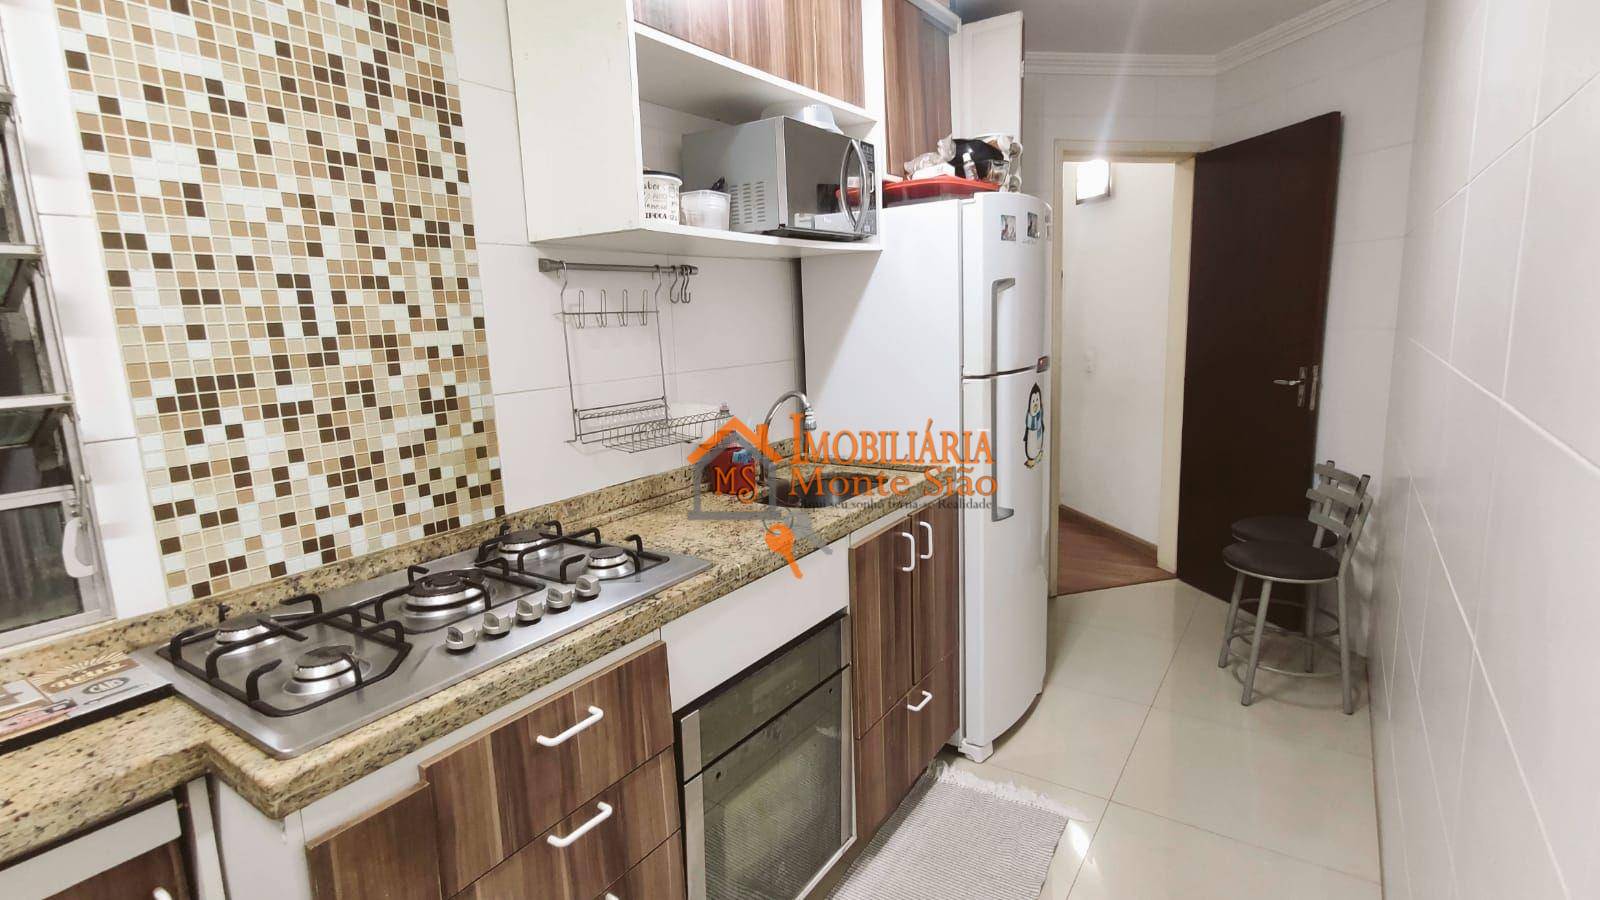 Apartamento com 1 dormitório à venda, 48 m² por R$ 207.000,00 - Picanço - Guarulhos/SP